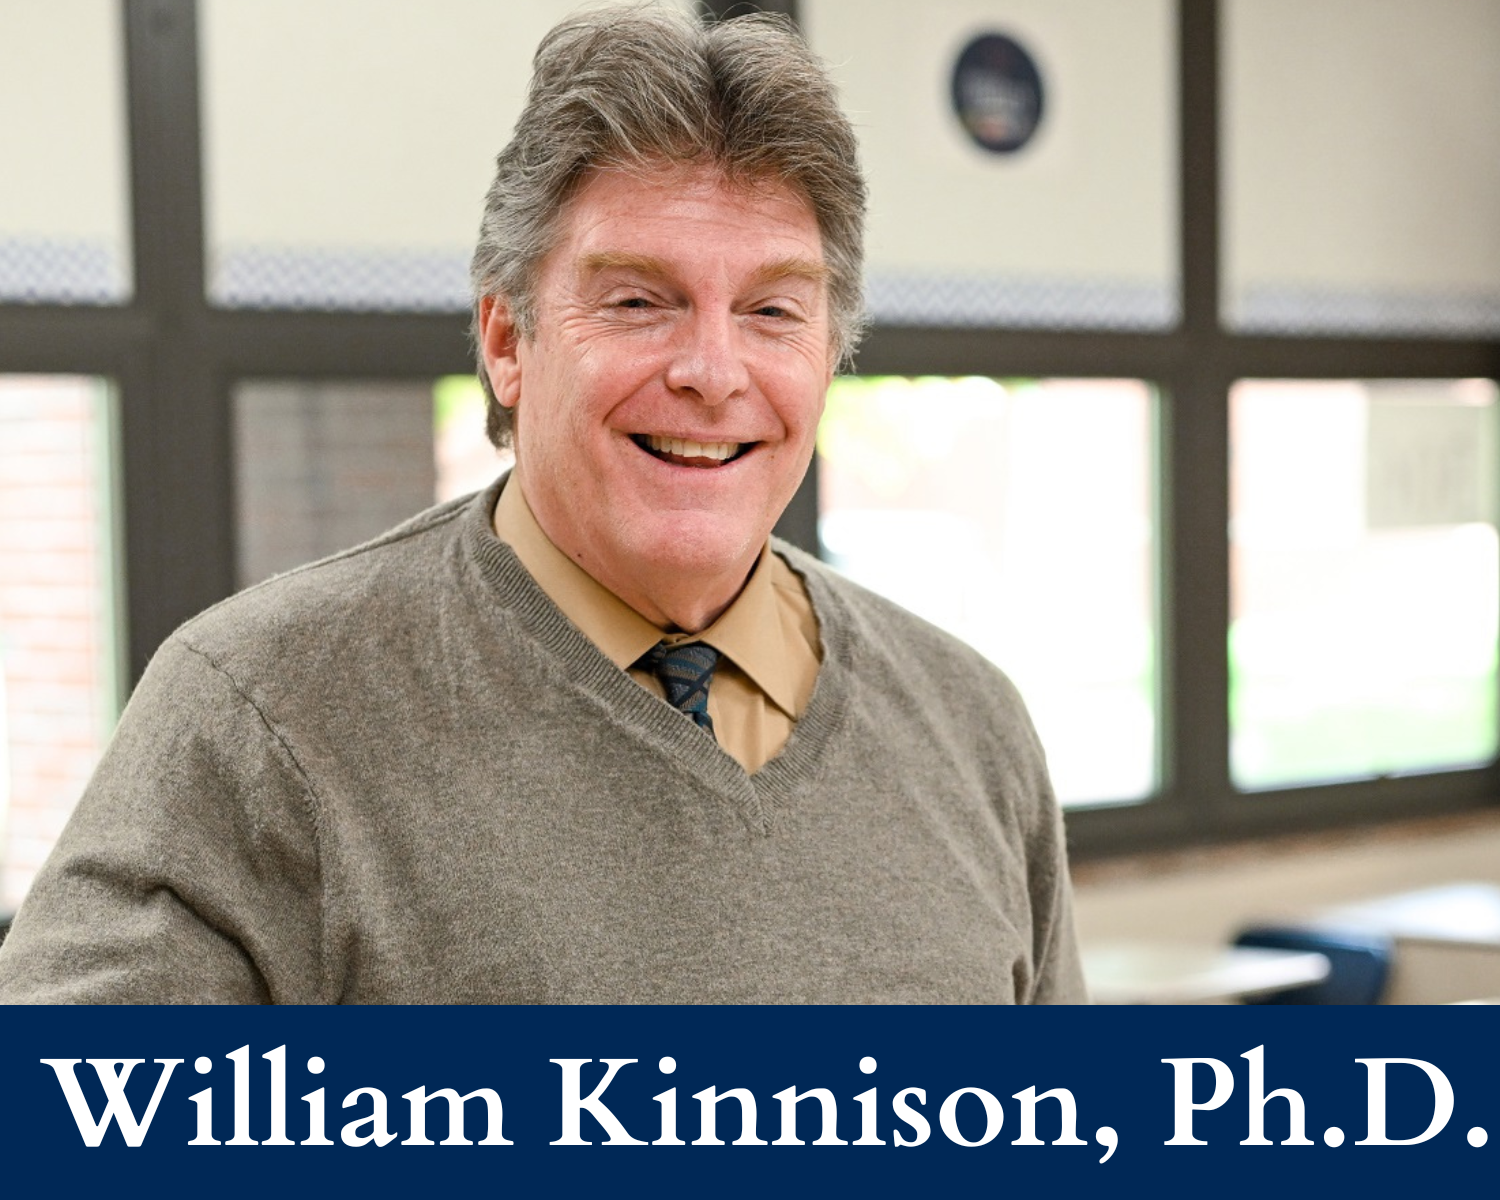 William Kinnison, Ph.D